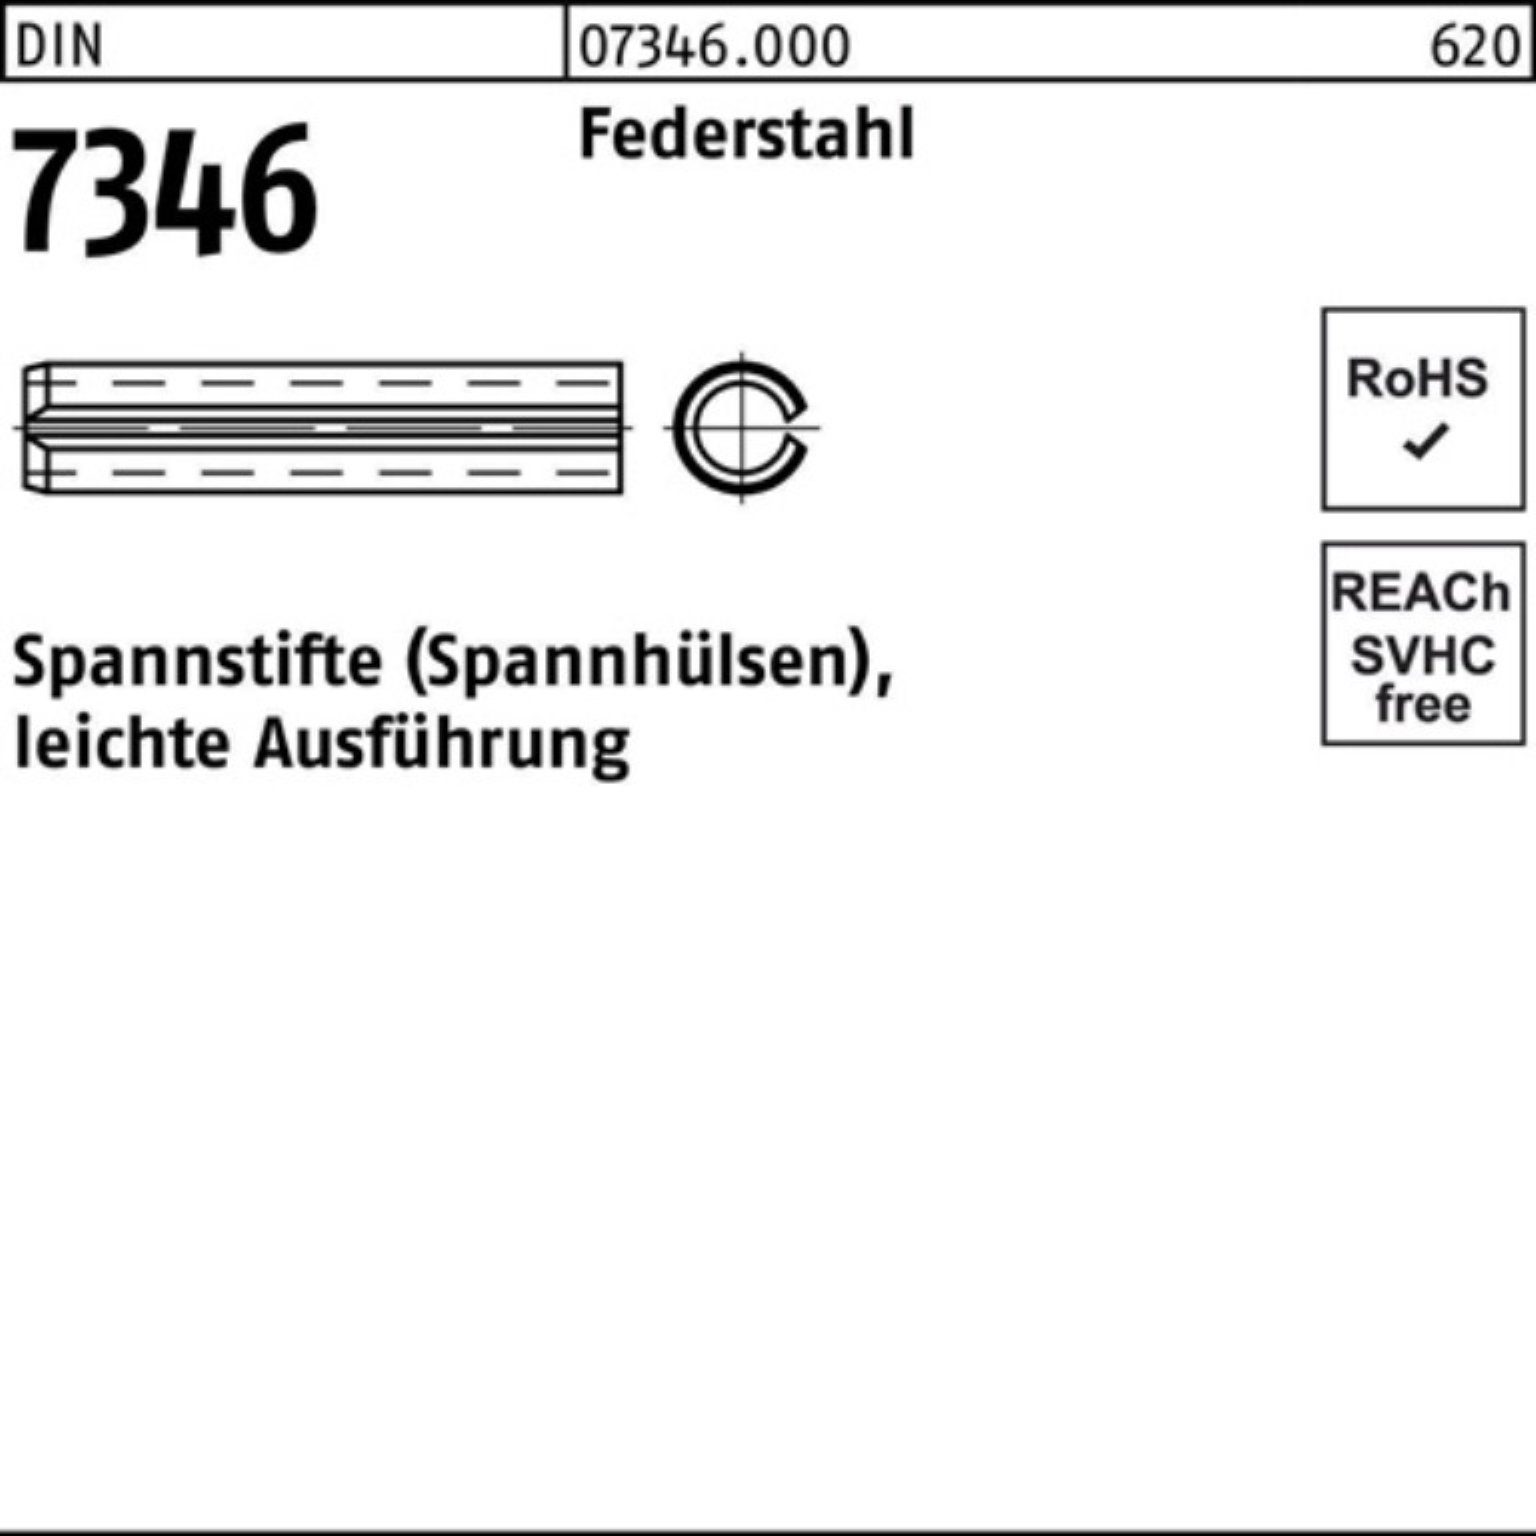 Spannstift Ausf DIN 100er Pack 5x 7346/ISO Spannstift leichte 70 13337 Reyher Federstahl